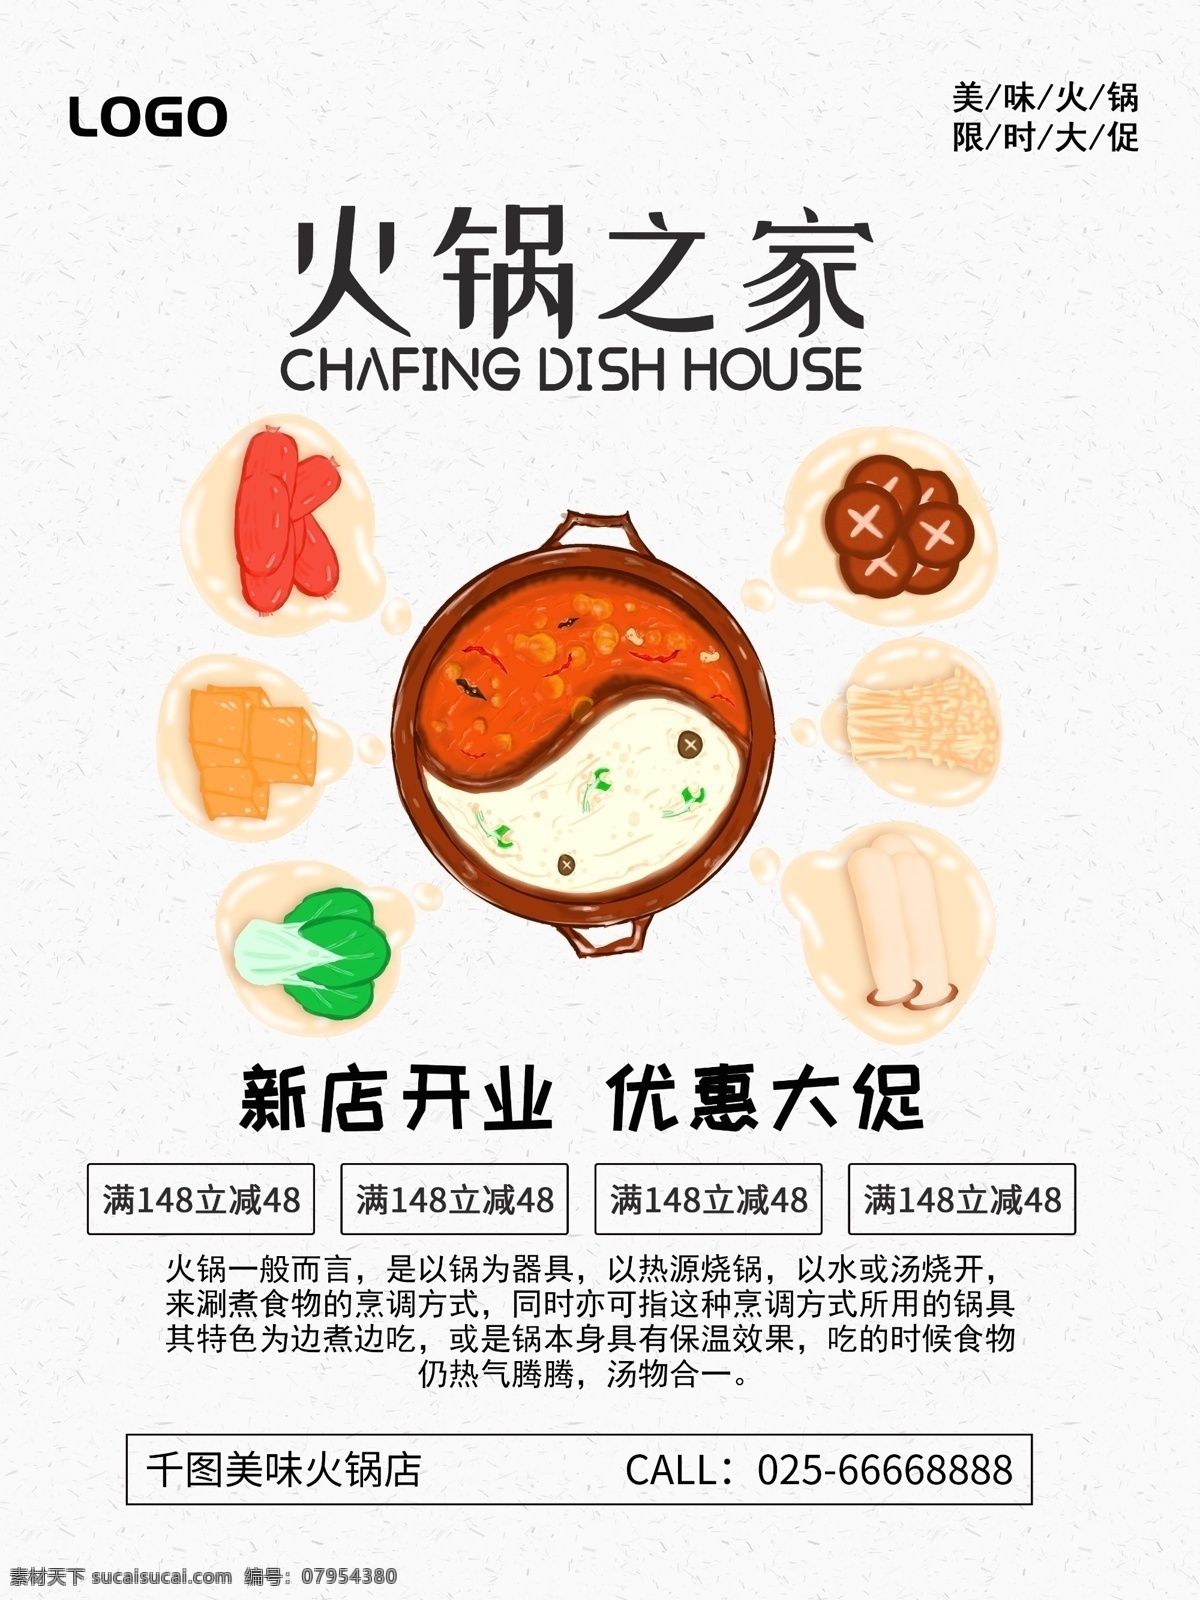 创意 简约 火锅 美食 促销 海报 食物 餐厅 食材